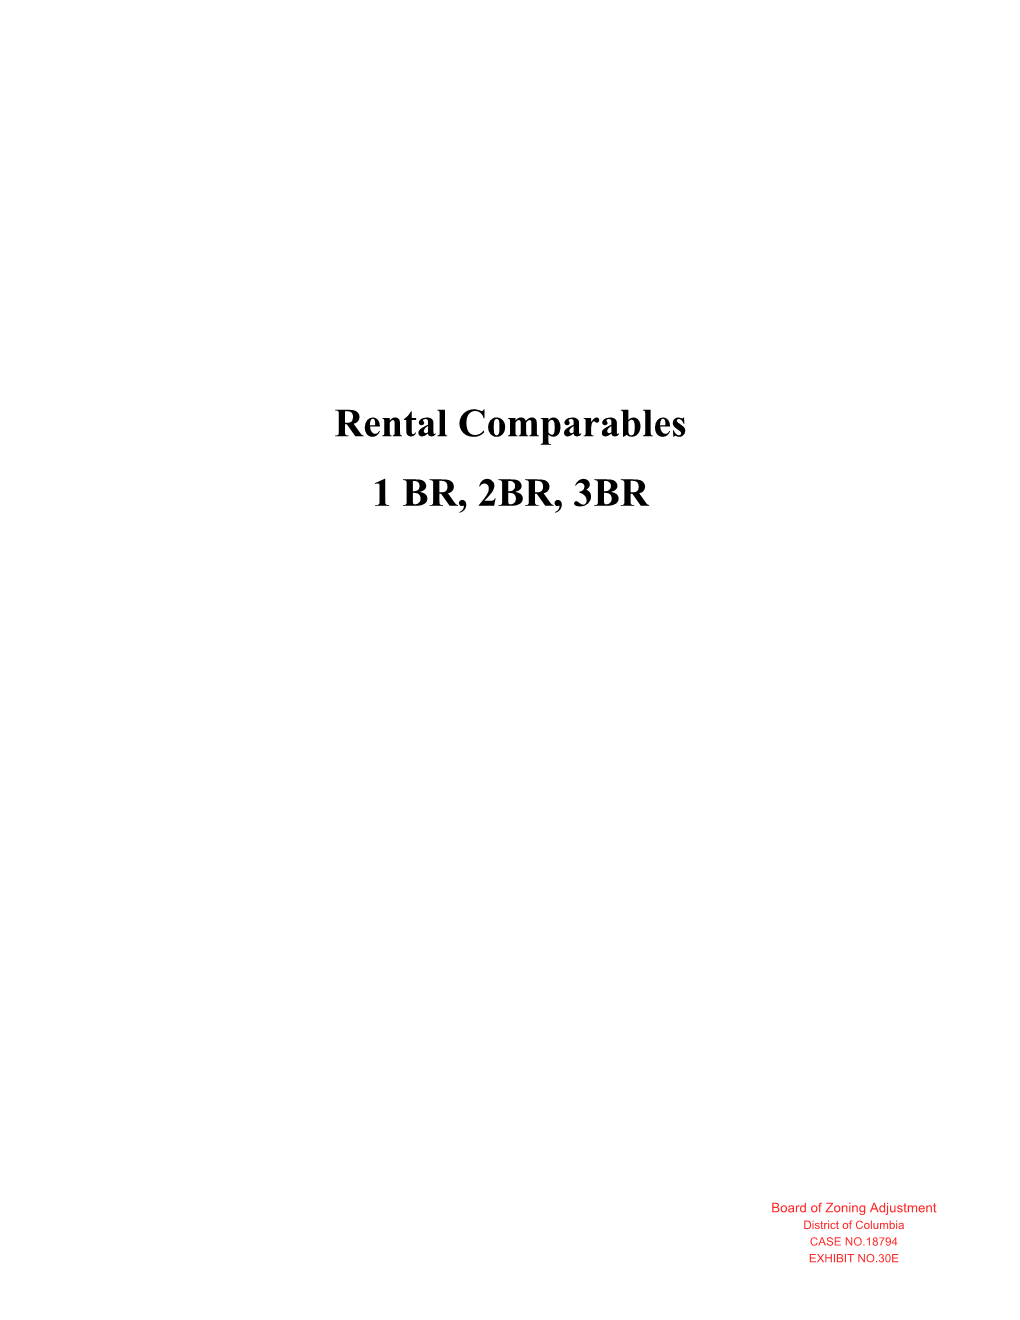 Rental Comparables 1 BR, 2BR, 3BR